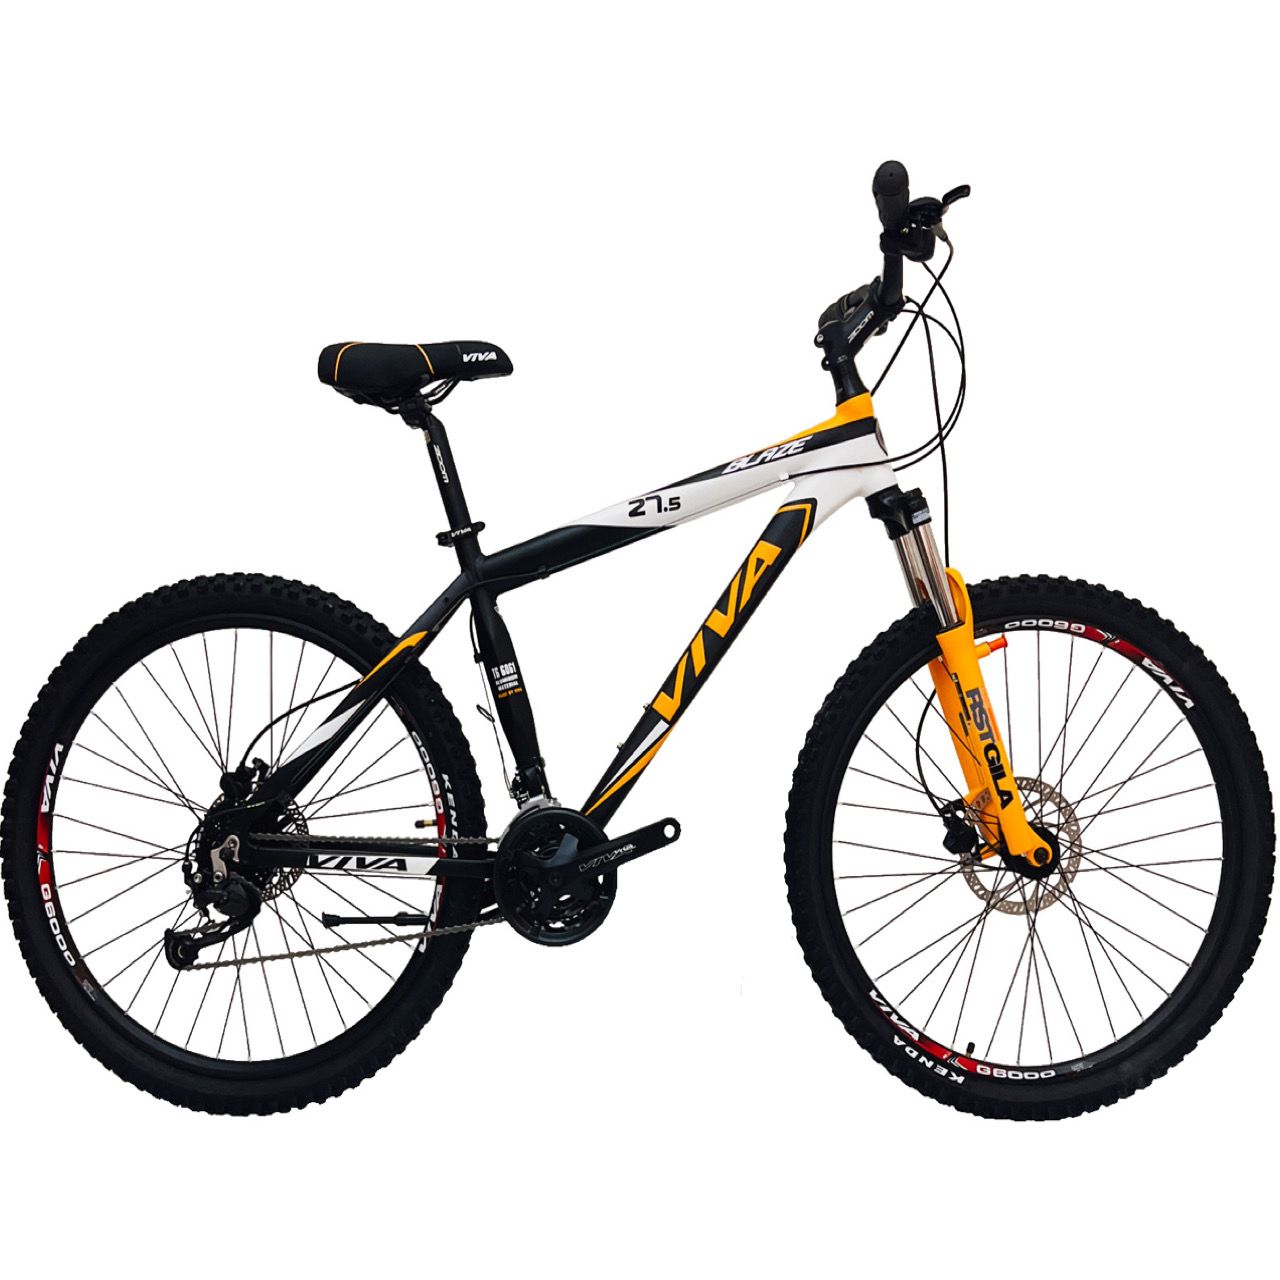 دوچرخه کوهستان ویوا مدل BLAZE کد 27 سایز 27.5 -  - 1